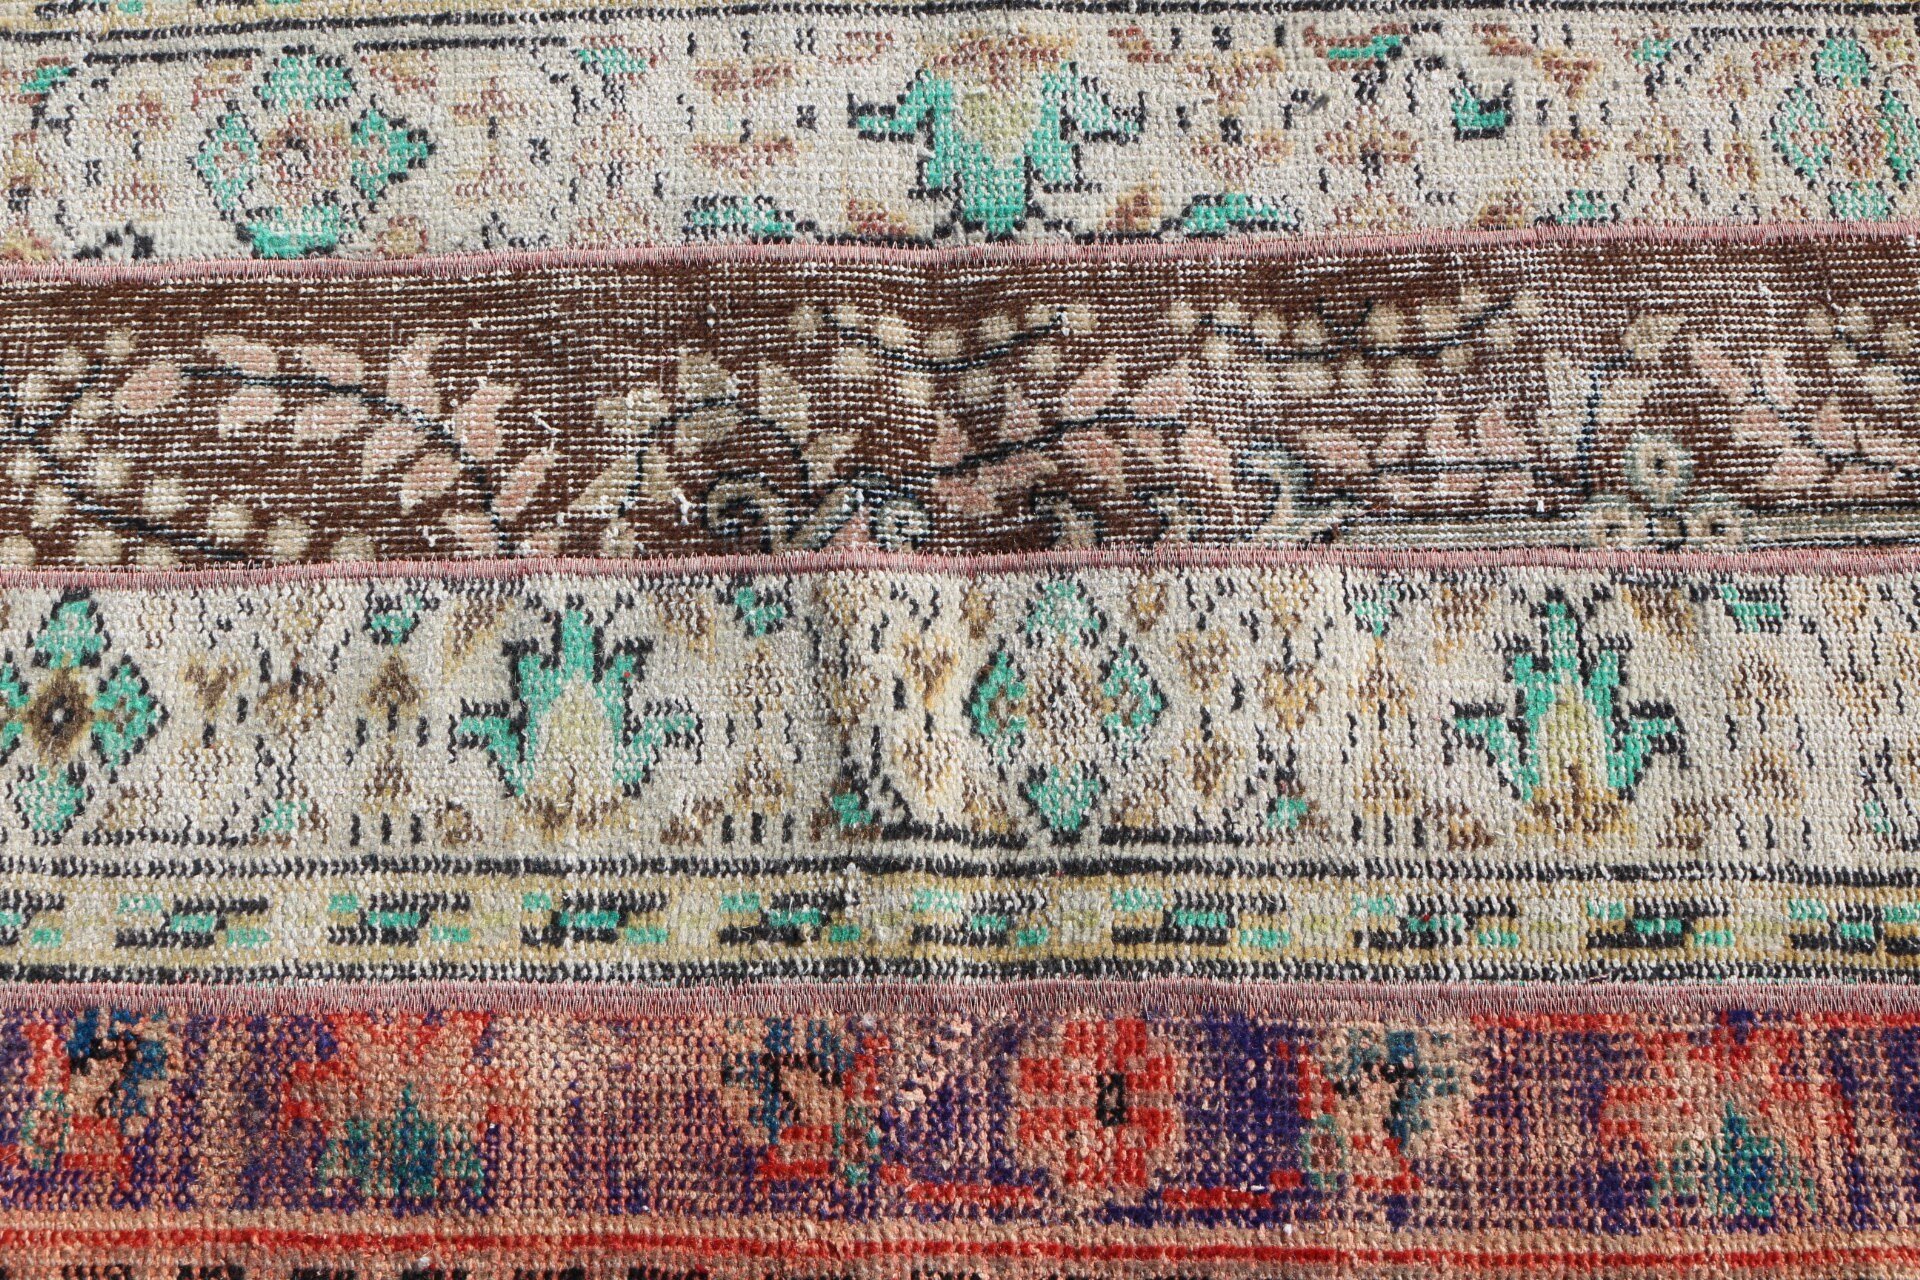 Türk Halıları, Antika Halı, 2.3x3.4 ft Küçük Halılar, Kahverengi Ev Dekorasyonu Halısı, Yatak Odası Halısı, Duvara Asılı Halılar, Çocuk Halıları, Vintage Halılar, Eski Halı